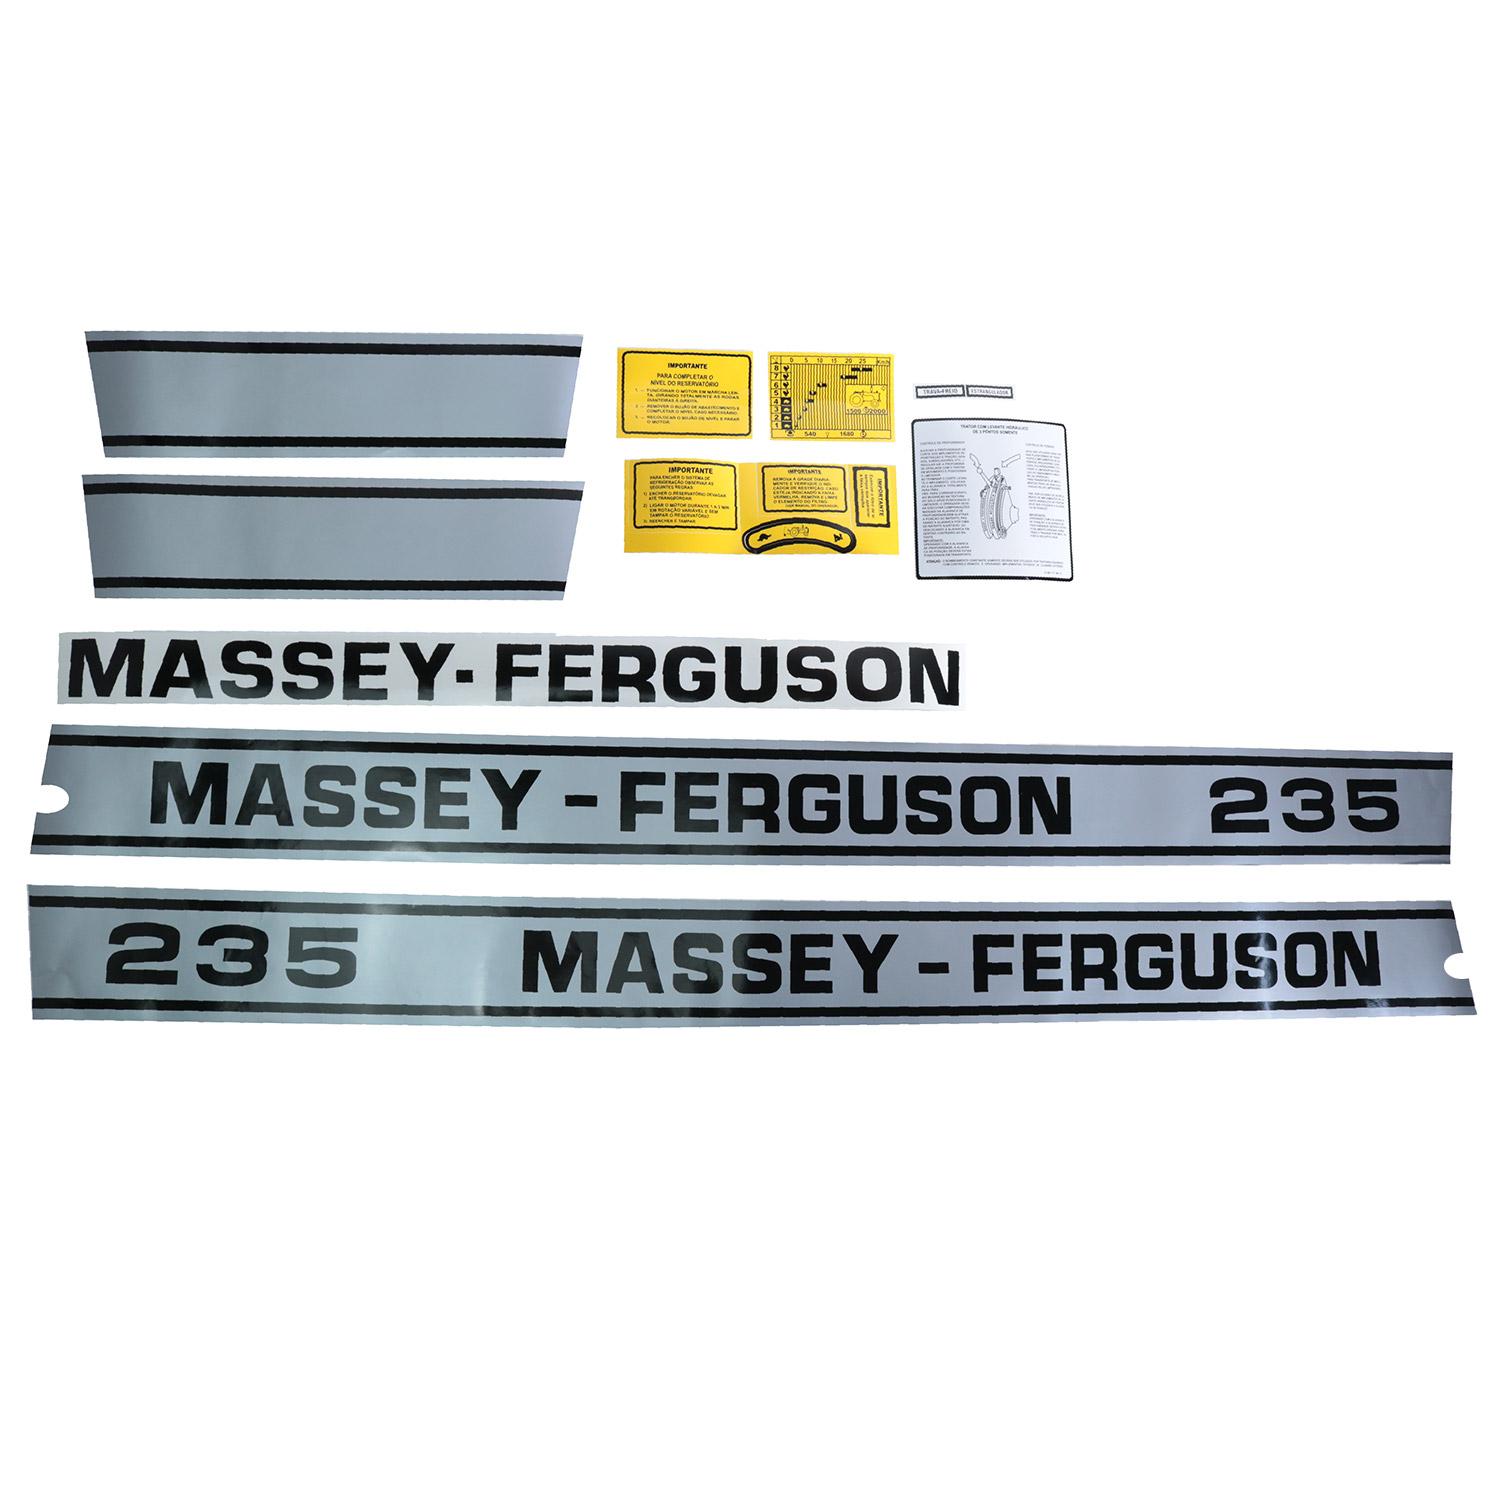 LS Máquinas  Jogo De Decalque Trator Massey Ferguson 55x